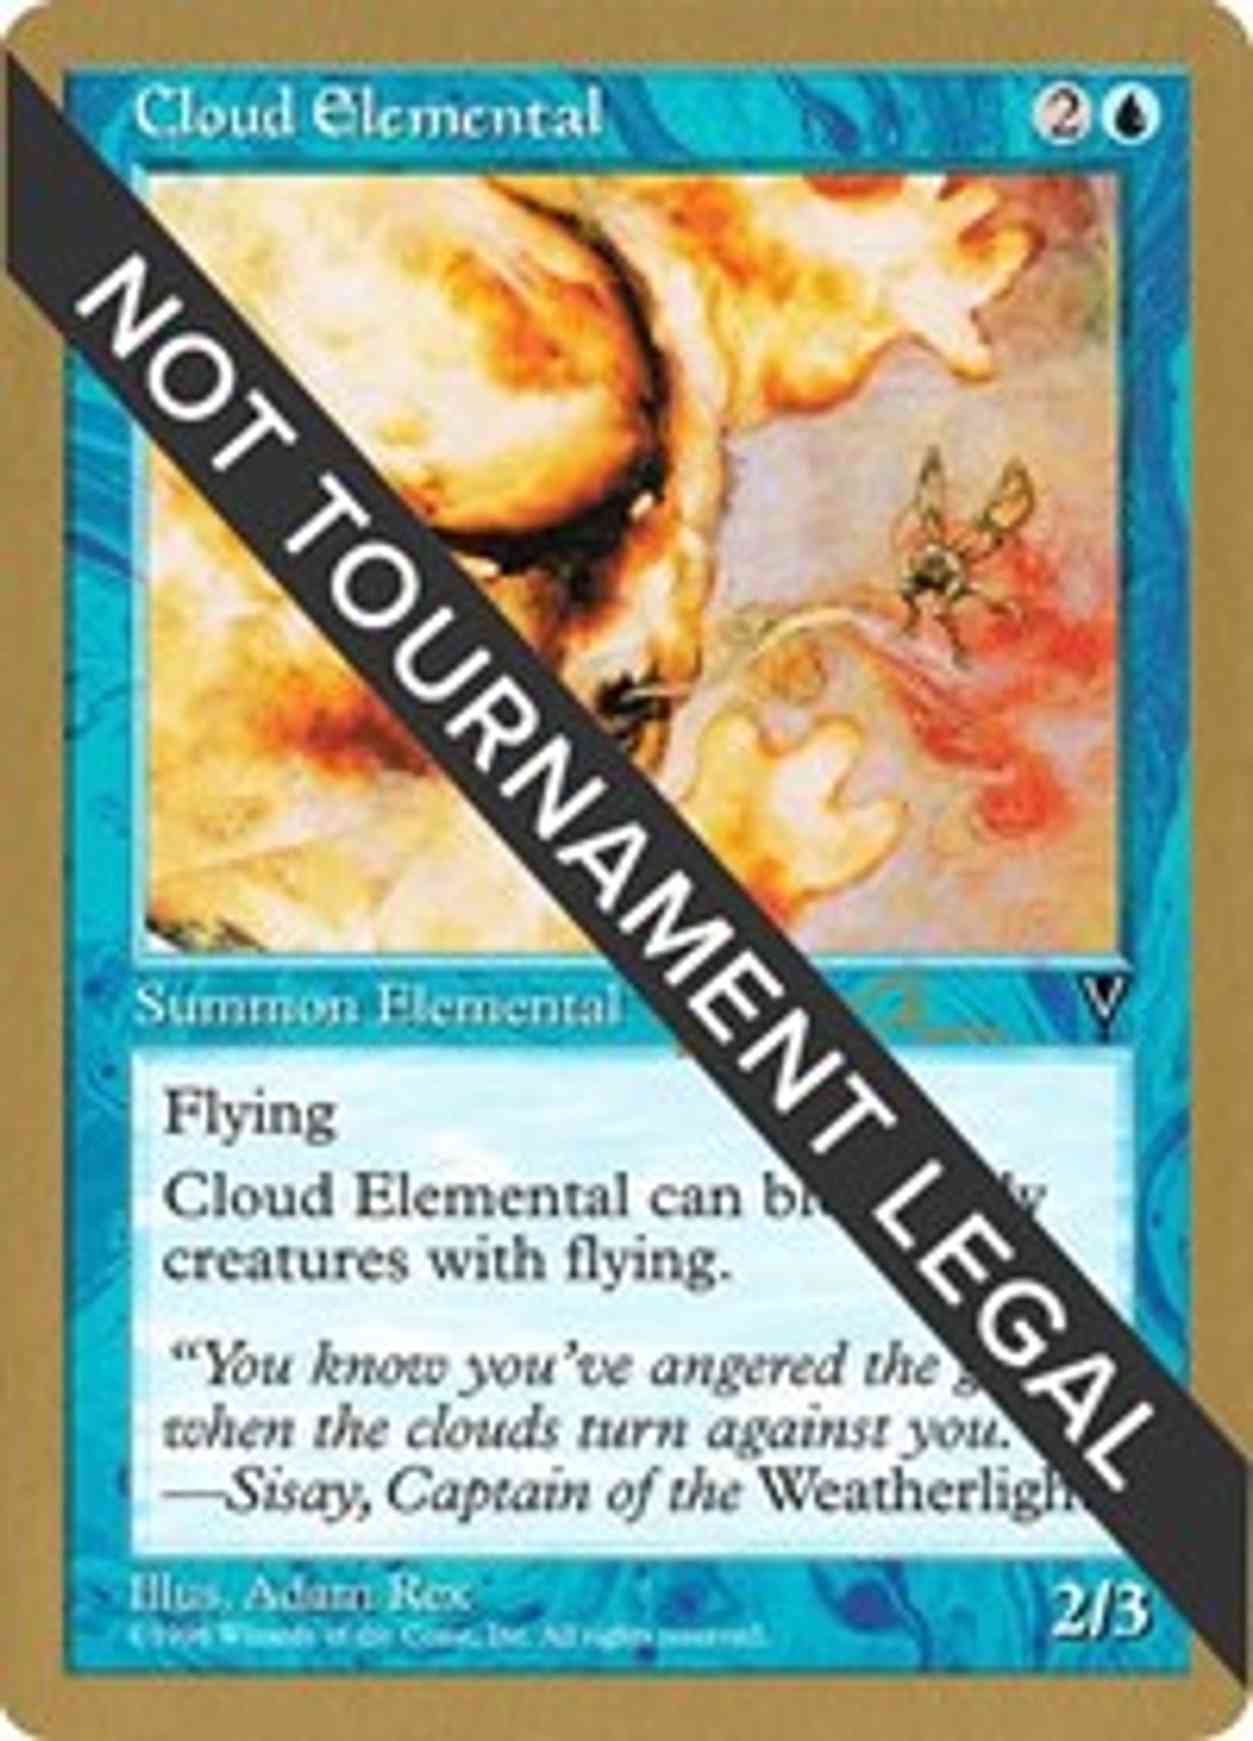 Cloud Elemental - 1997 Paul McCabe (VIS) magic card front